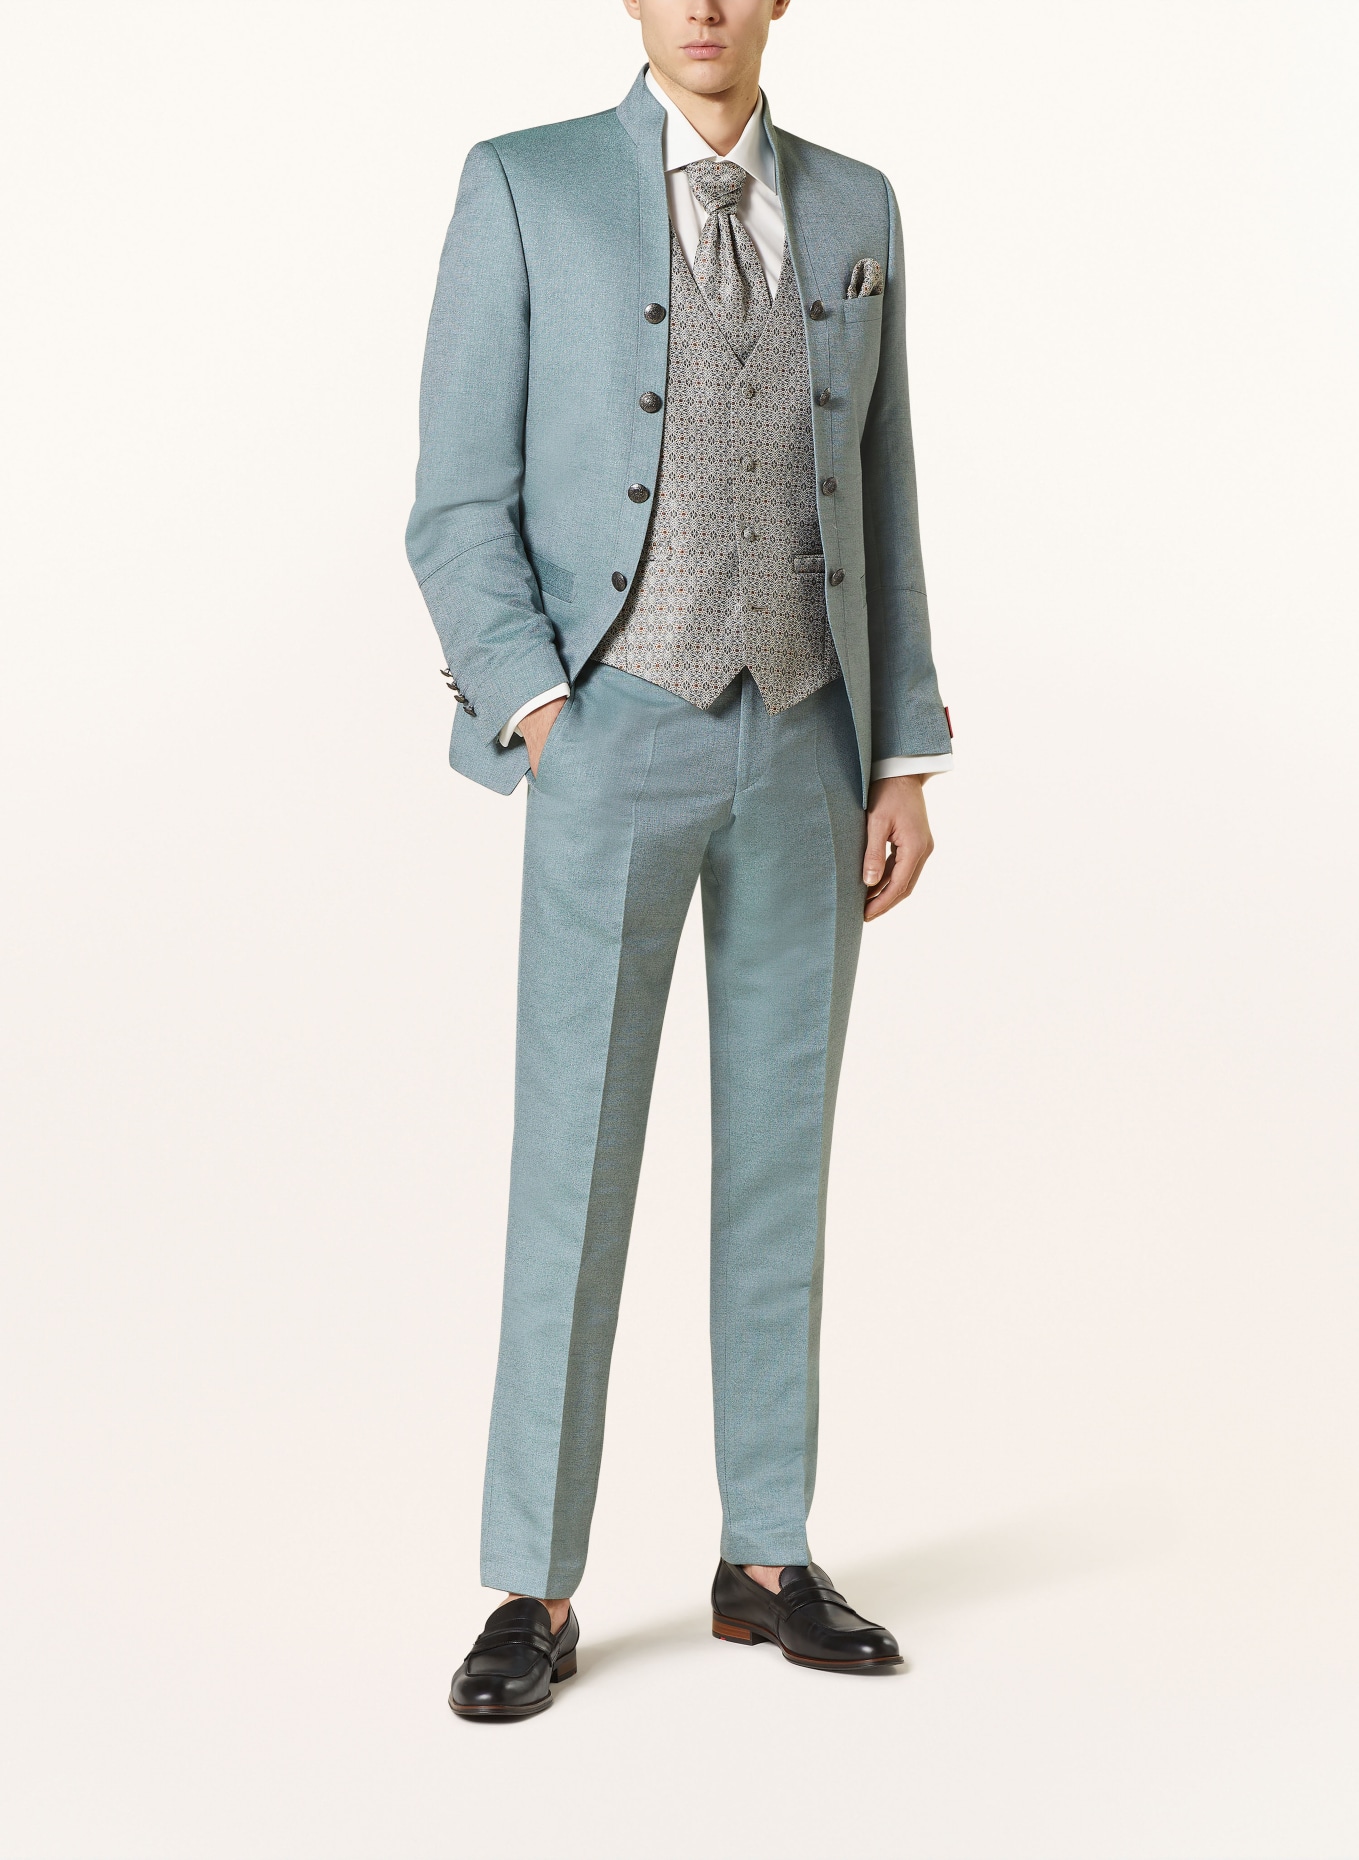 WILVORST Suit trousers extra slim fit, Color: 045 grün (Image 2)